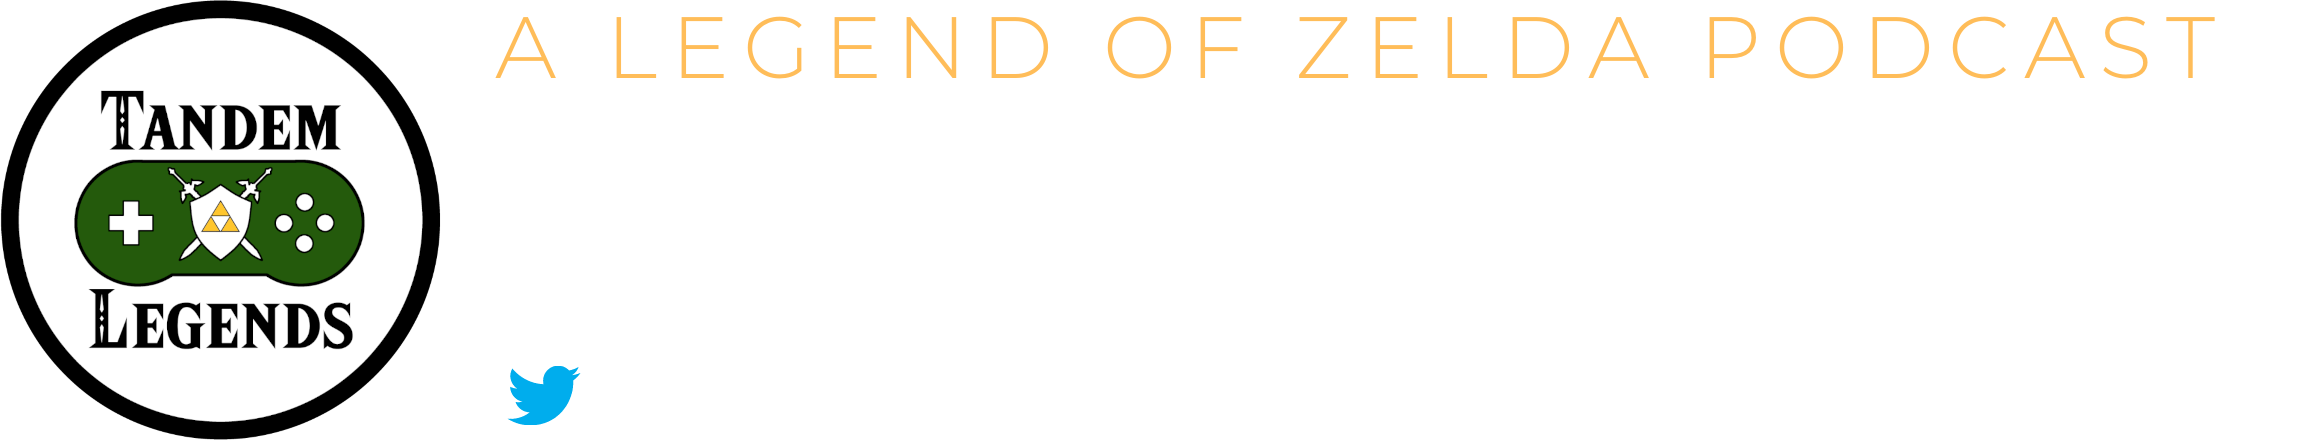 Tandem Legends - A Legend of Zelda Podcast